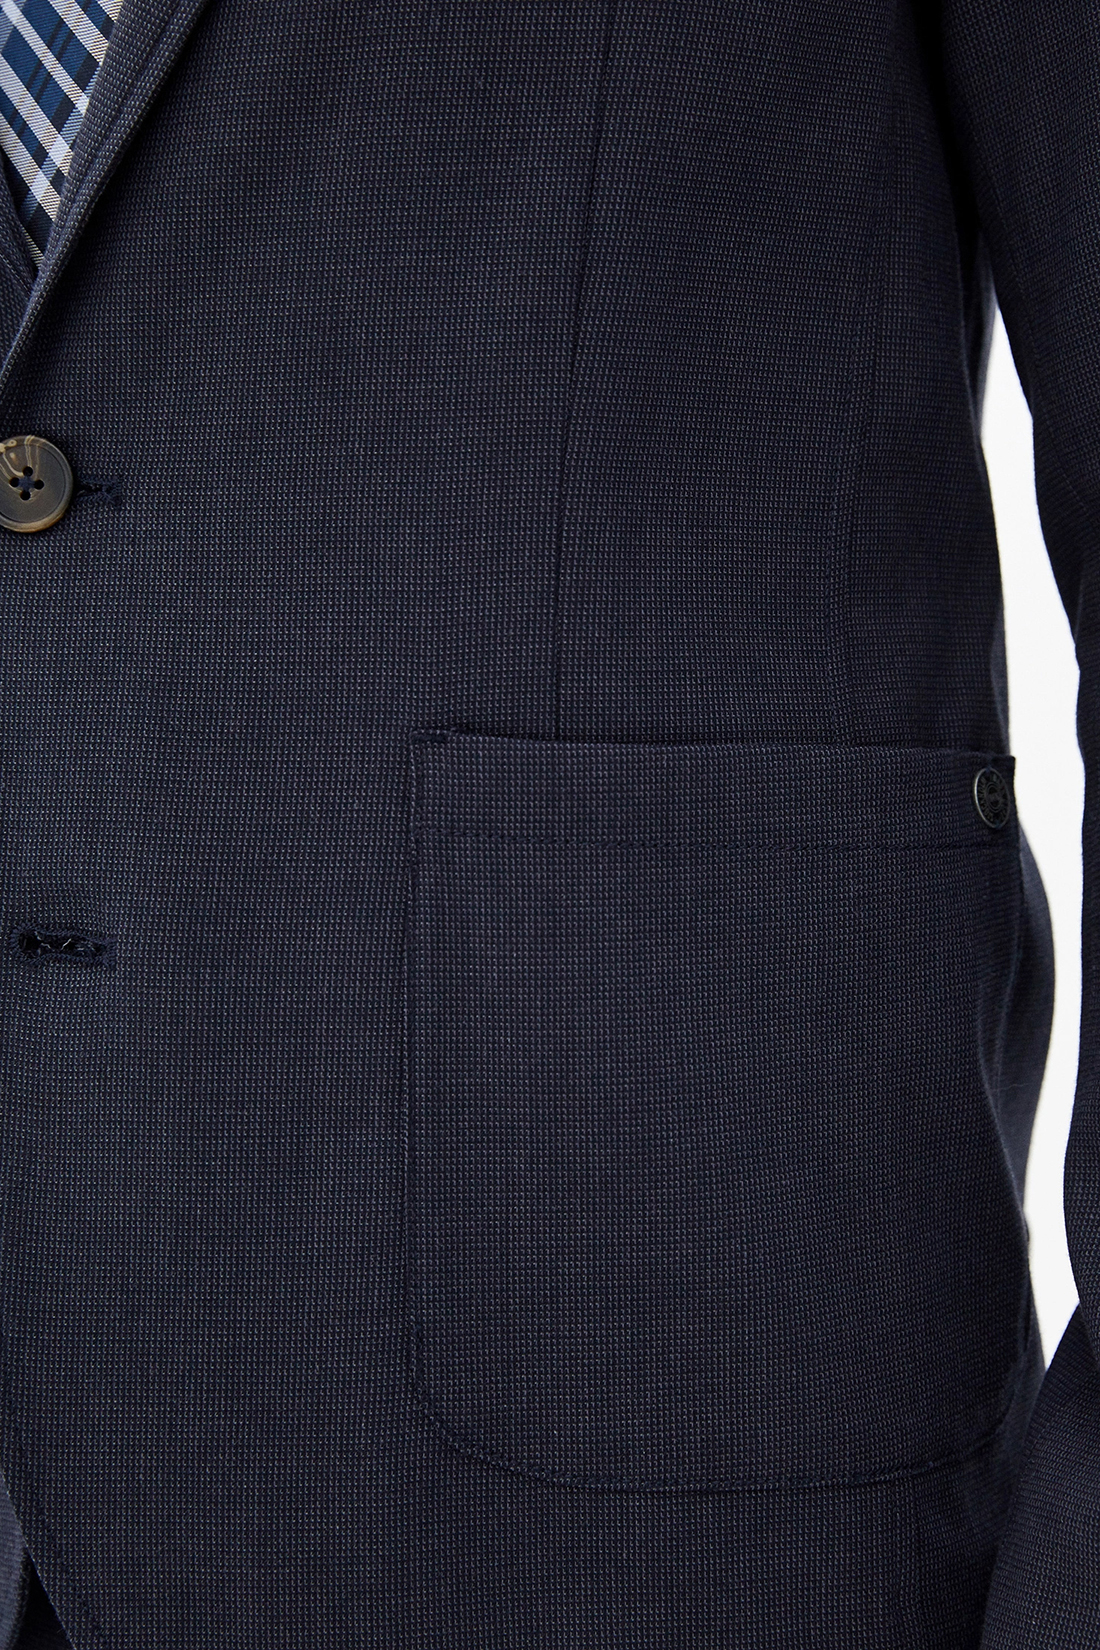 Повседневный пиджак (арт. baon B620002), размер S, цвет синий Повседневный пиджак (арт. baon B620002) - фото 3